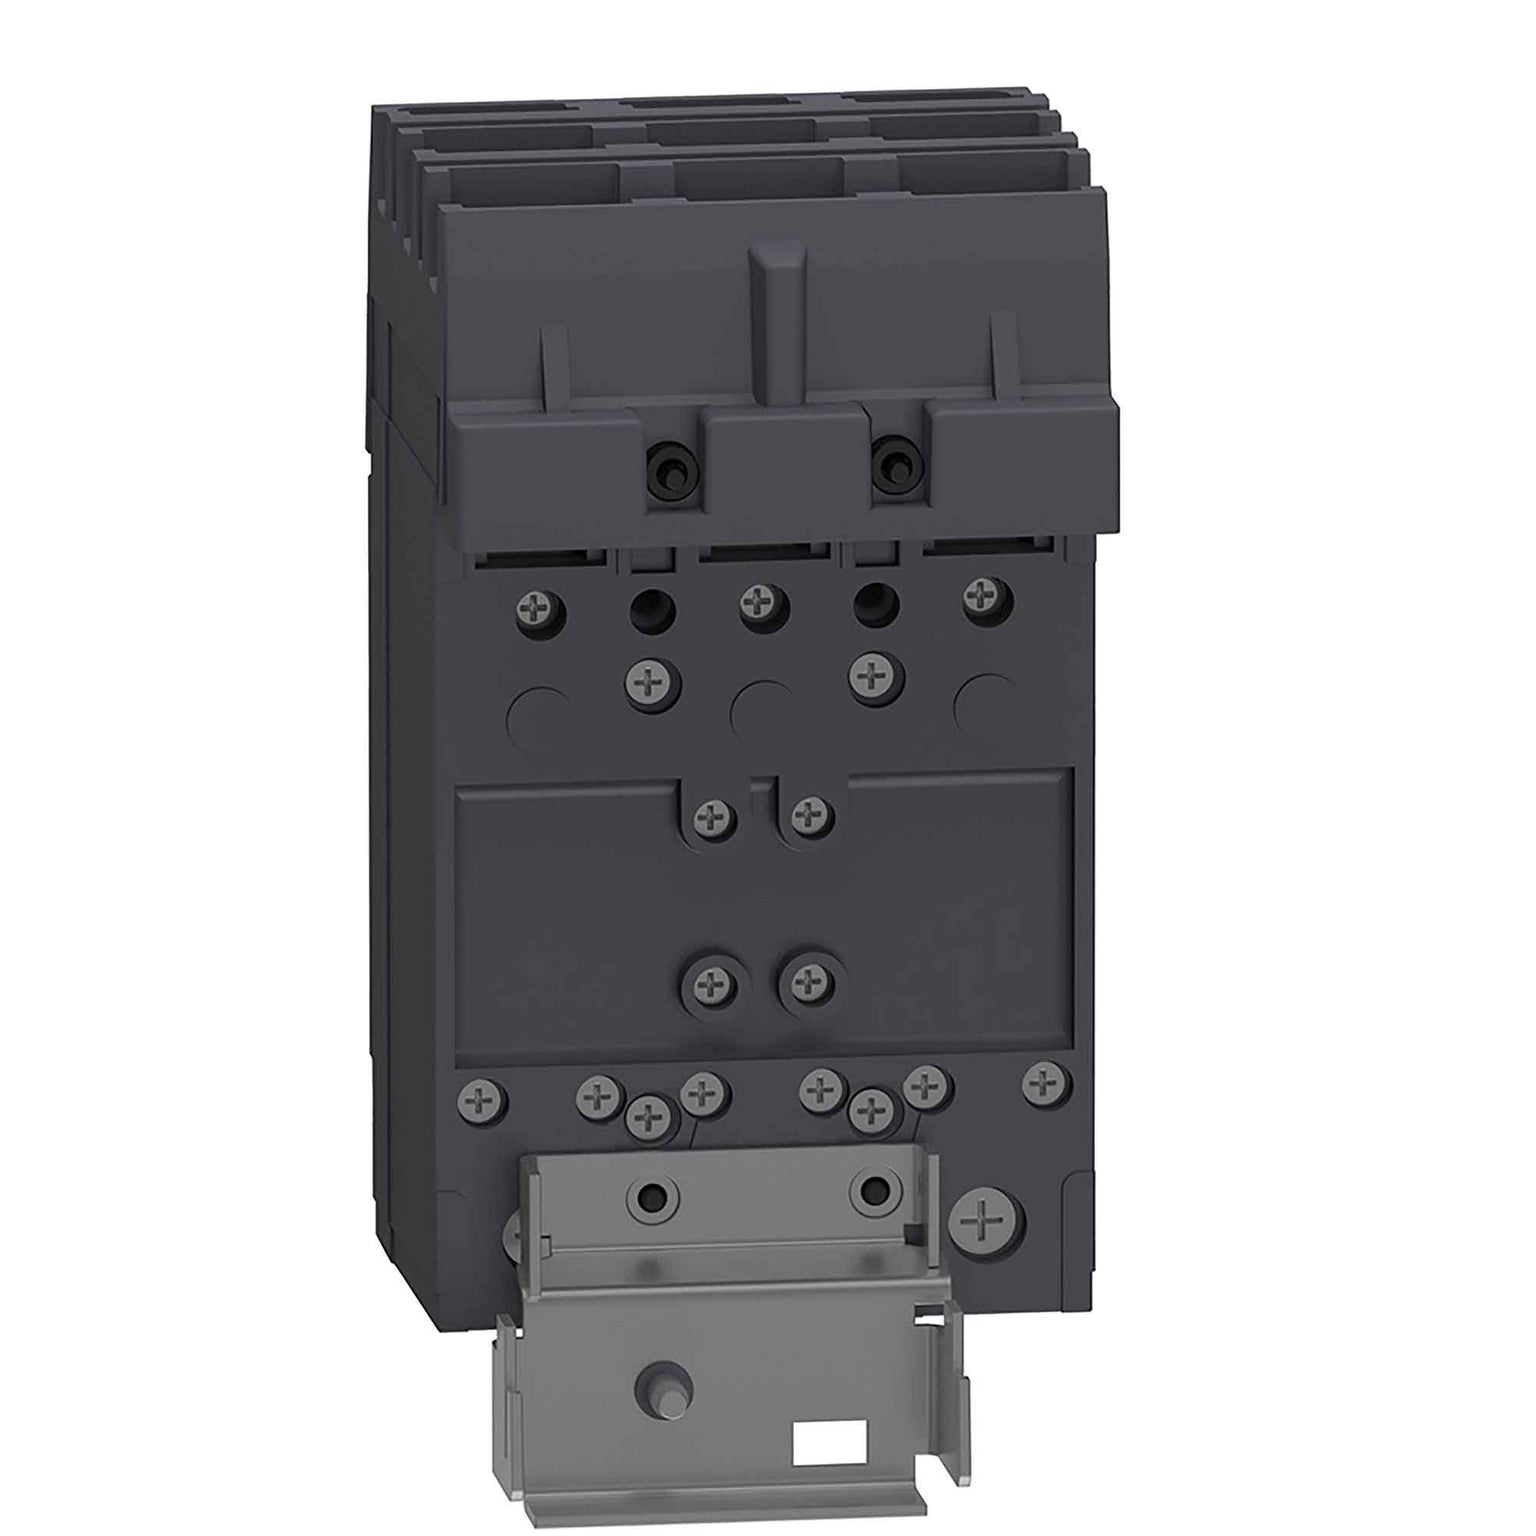 QGA32080 - Square D - Molded Case Circuit Breakers